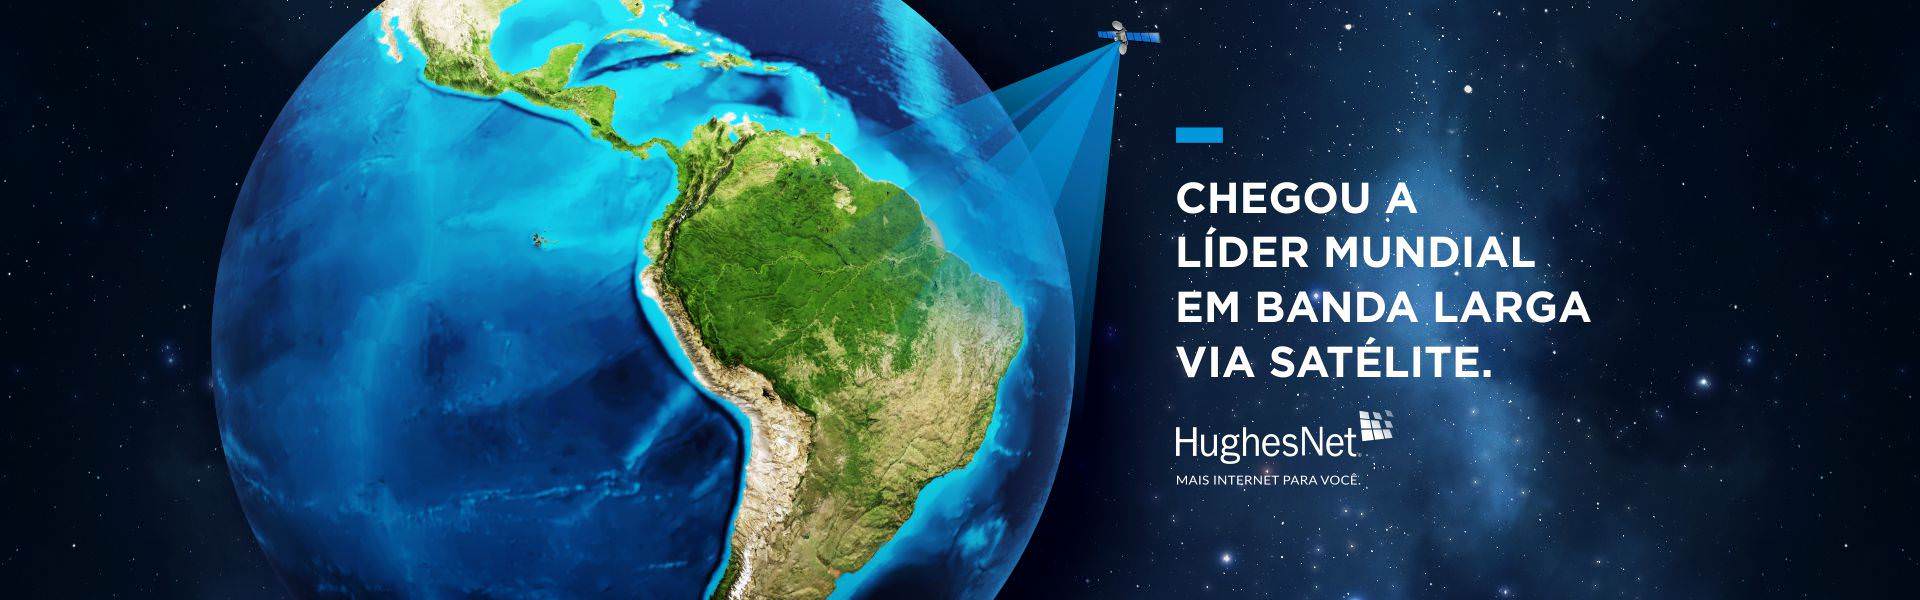 Serviço de Internet Por Satélite HughesNet na cidade de Chapada dos Guimarães / MT